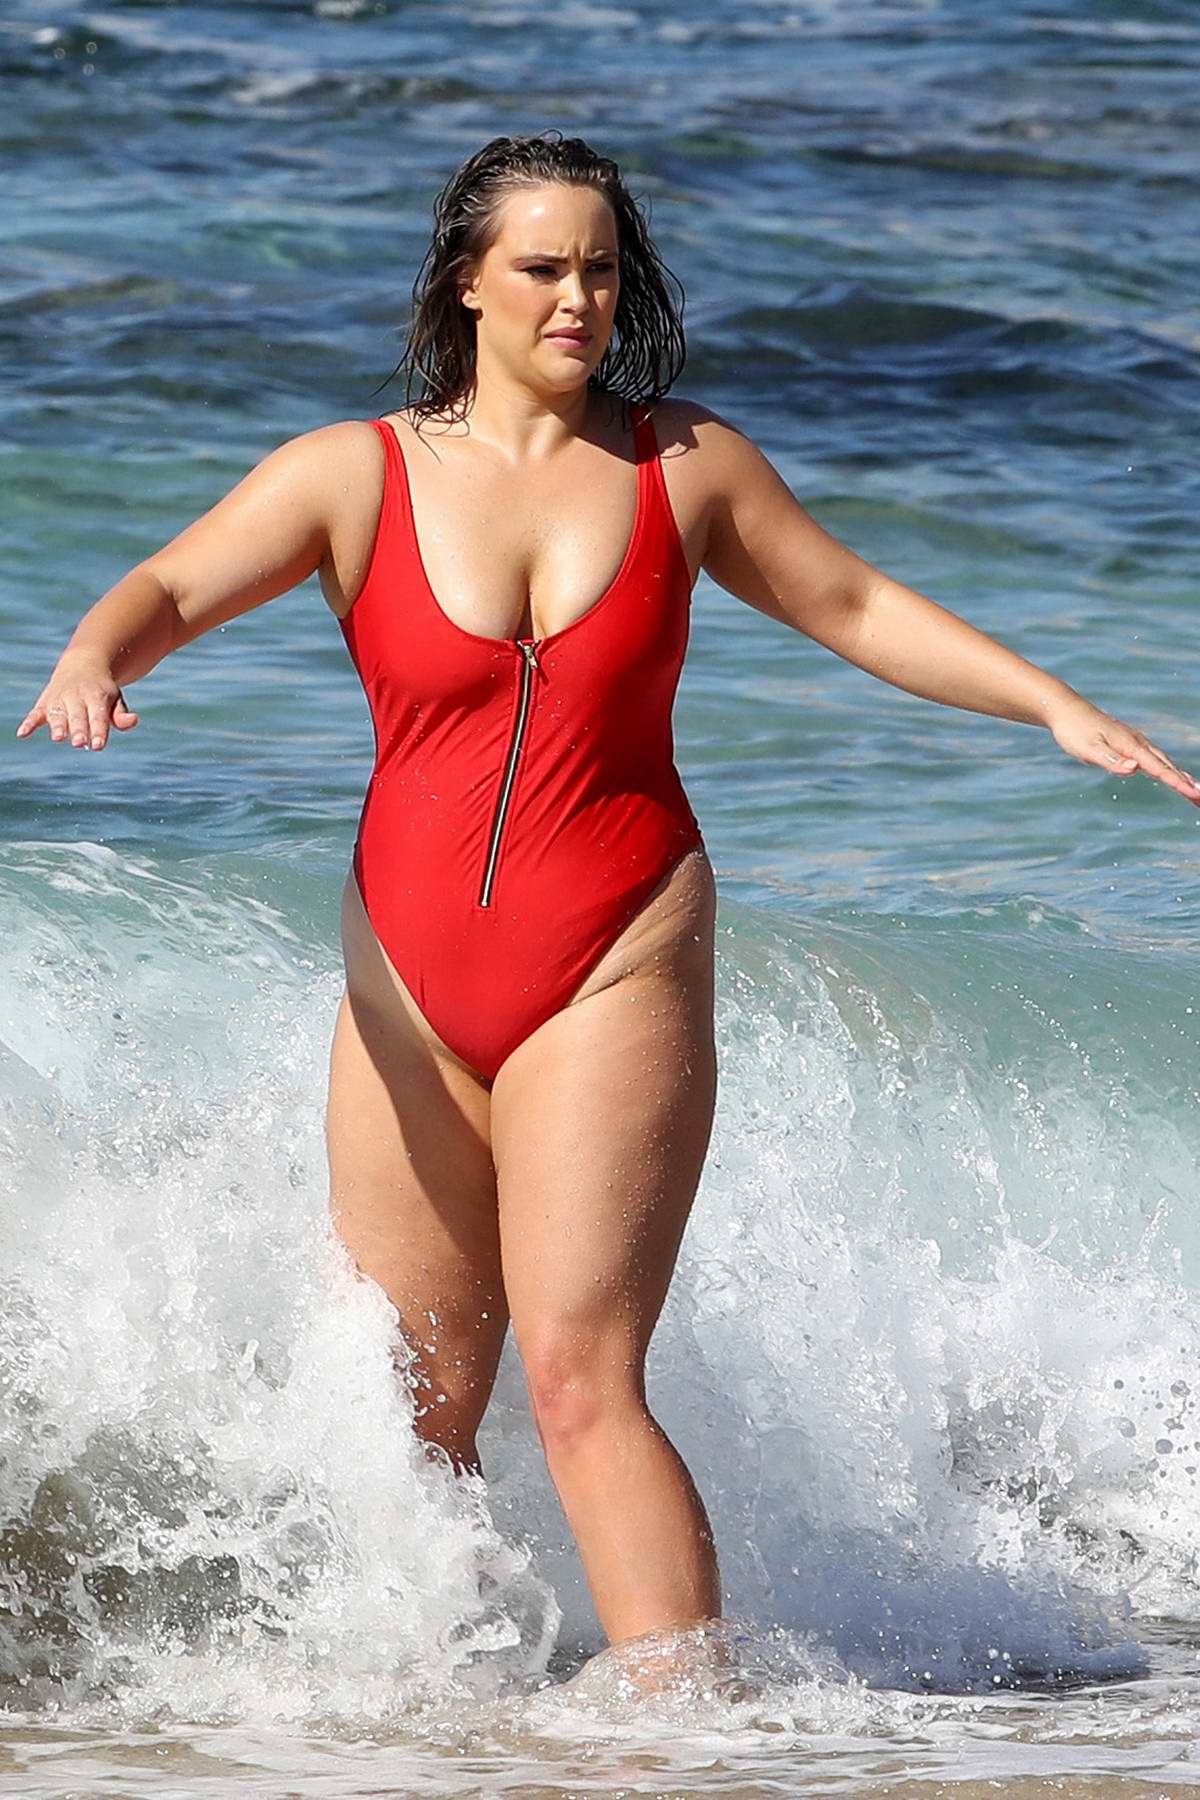 Elizabeth Hurley shows off her curves in teeny white bikini